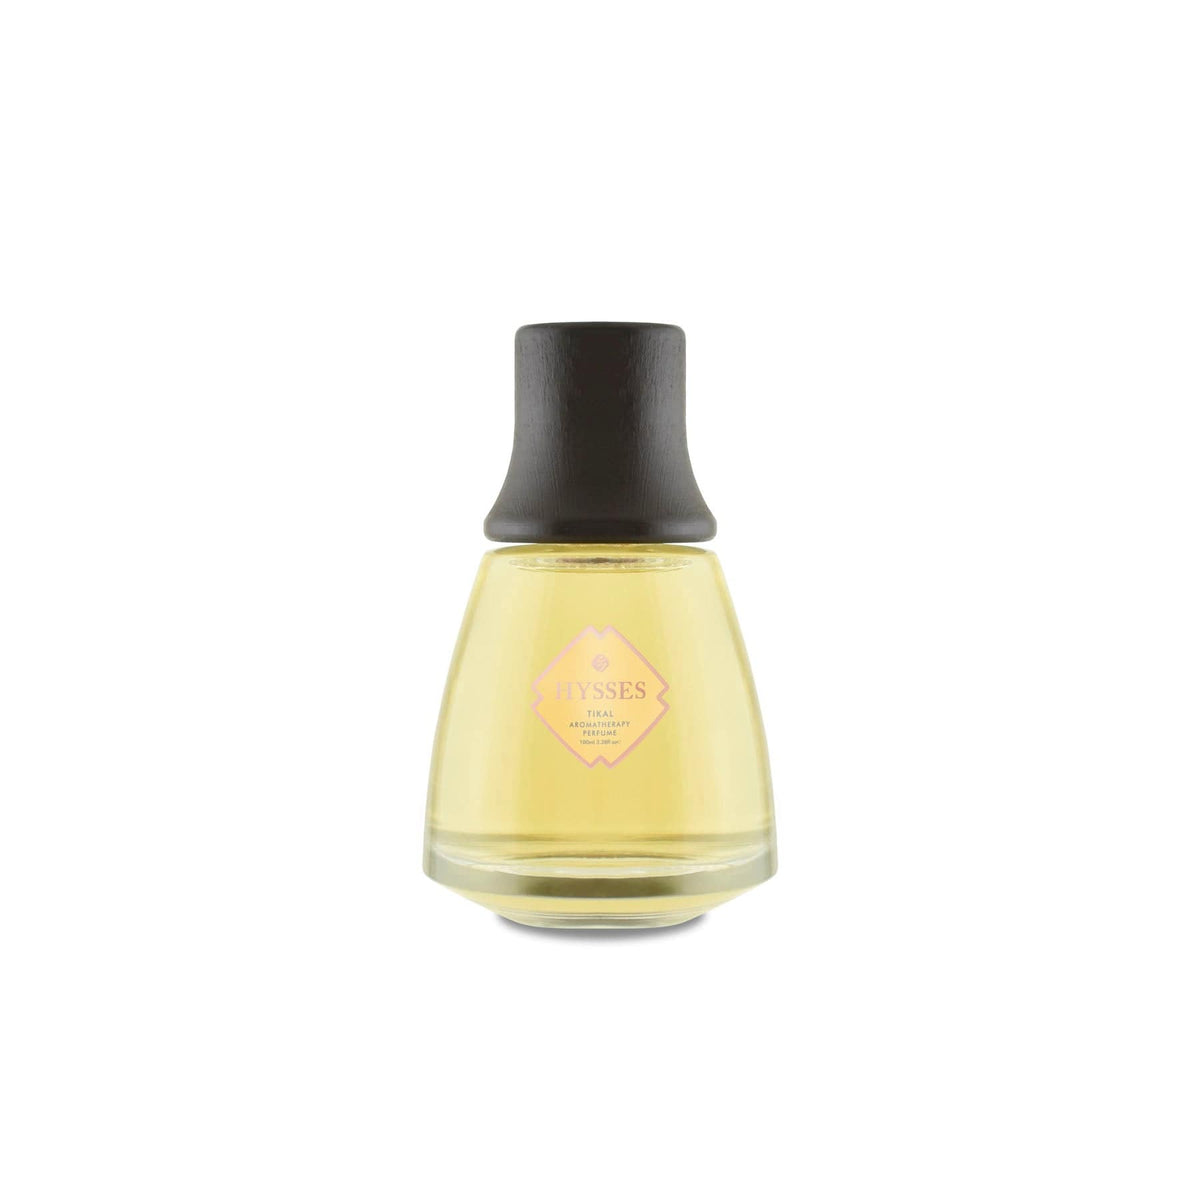 HYSSES Perfume Aromatherapy Perfume, Tikal PS37